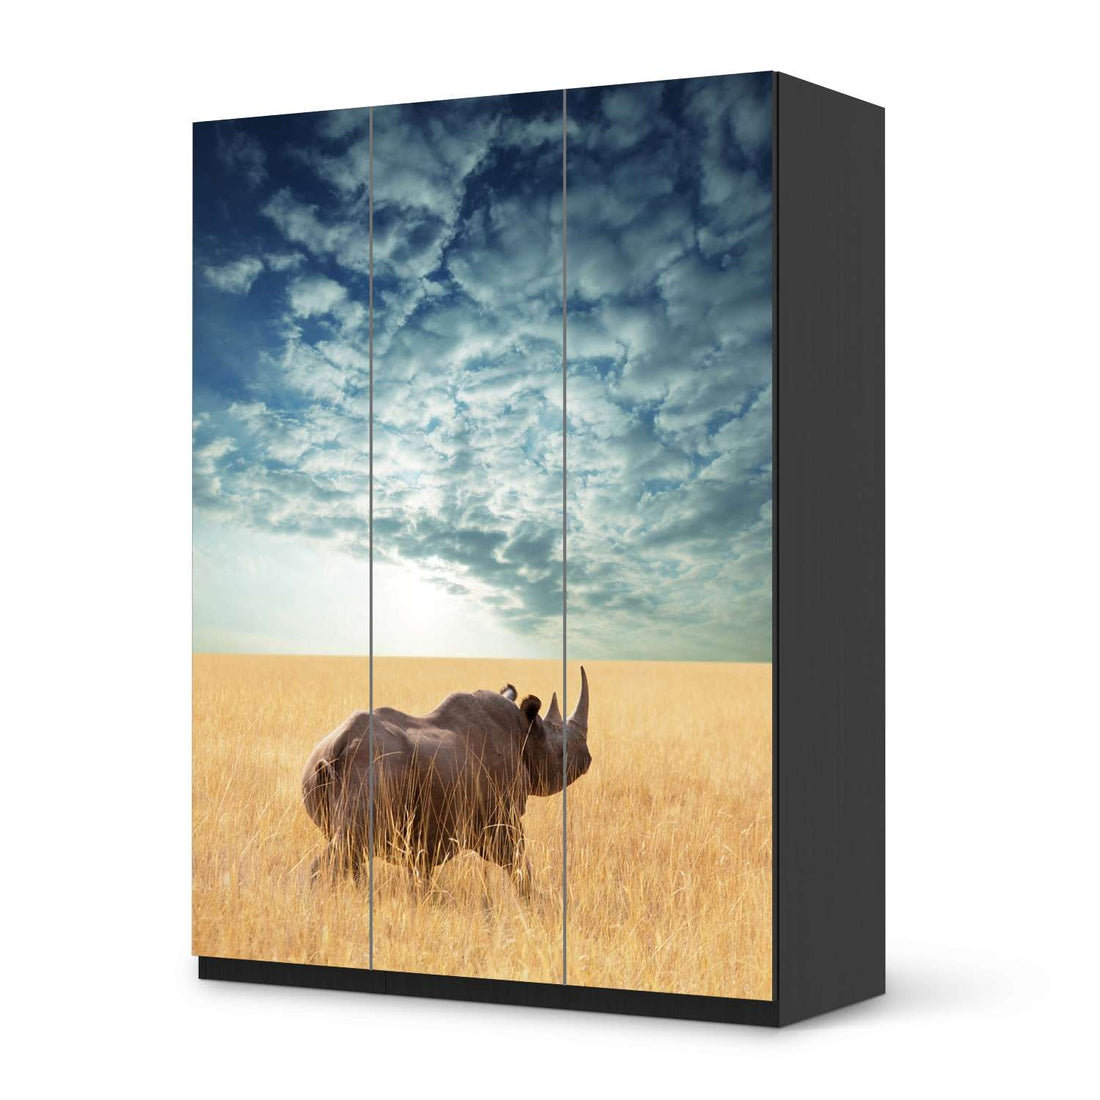 Folie für Möbel Rhino - IKEA Pax Schrank 201 cm Höhe - 3 Türen - schwarz